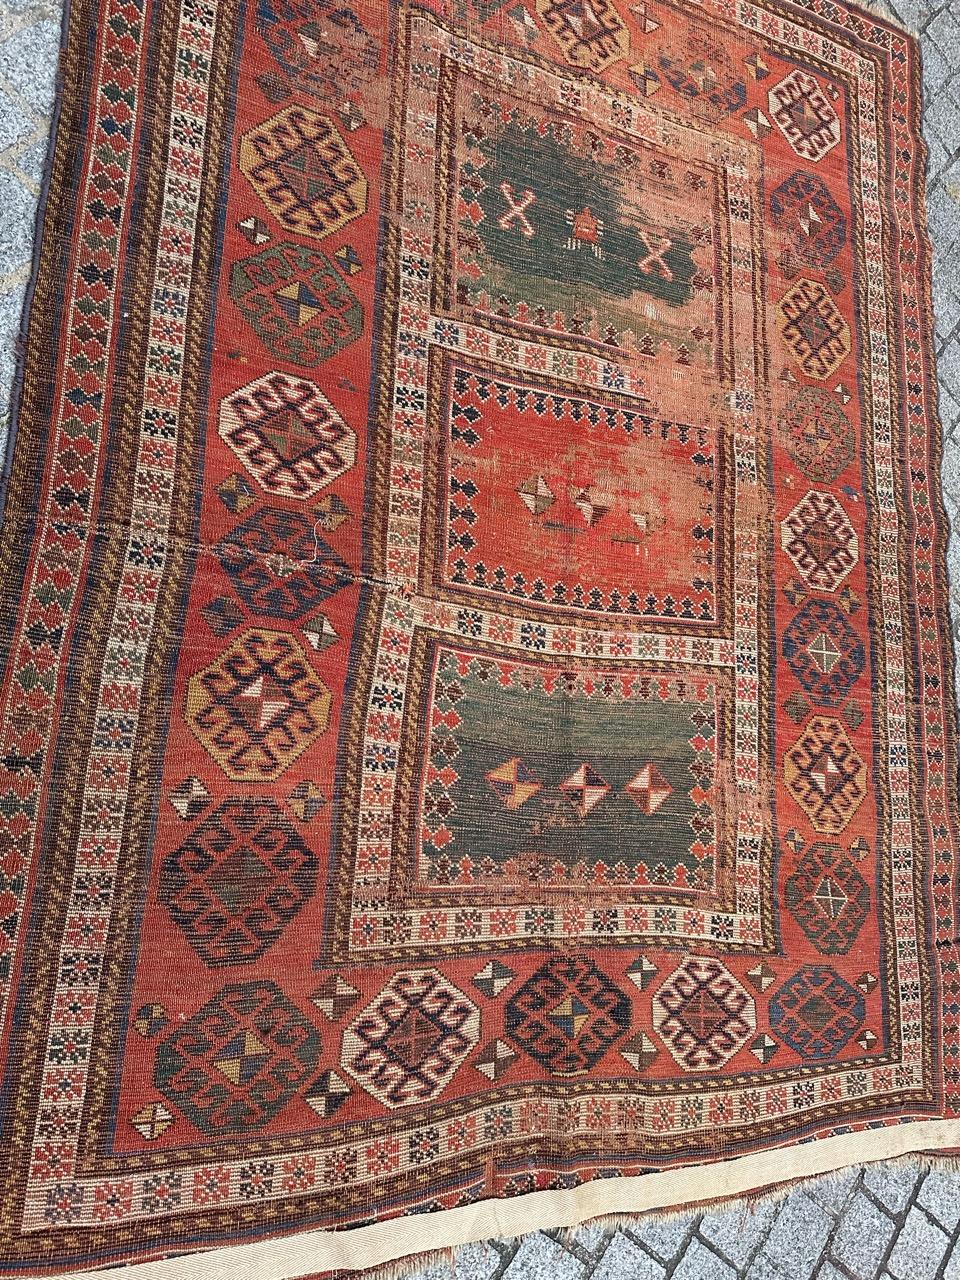 Schöner kaukasischer Teppich aus dem späten 19. Jahrhundert mit schönem geometrischem Muster und schönen natürlichen Farben, in beschädigtem Zustand, mit erheblichen Abnutzungserscheinungen und einigen Beschädigungen, komplett handgeknüpft mit Wolle